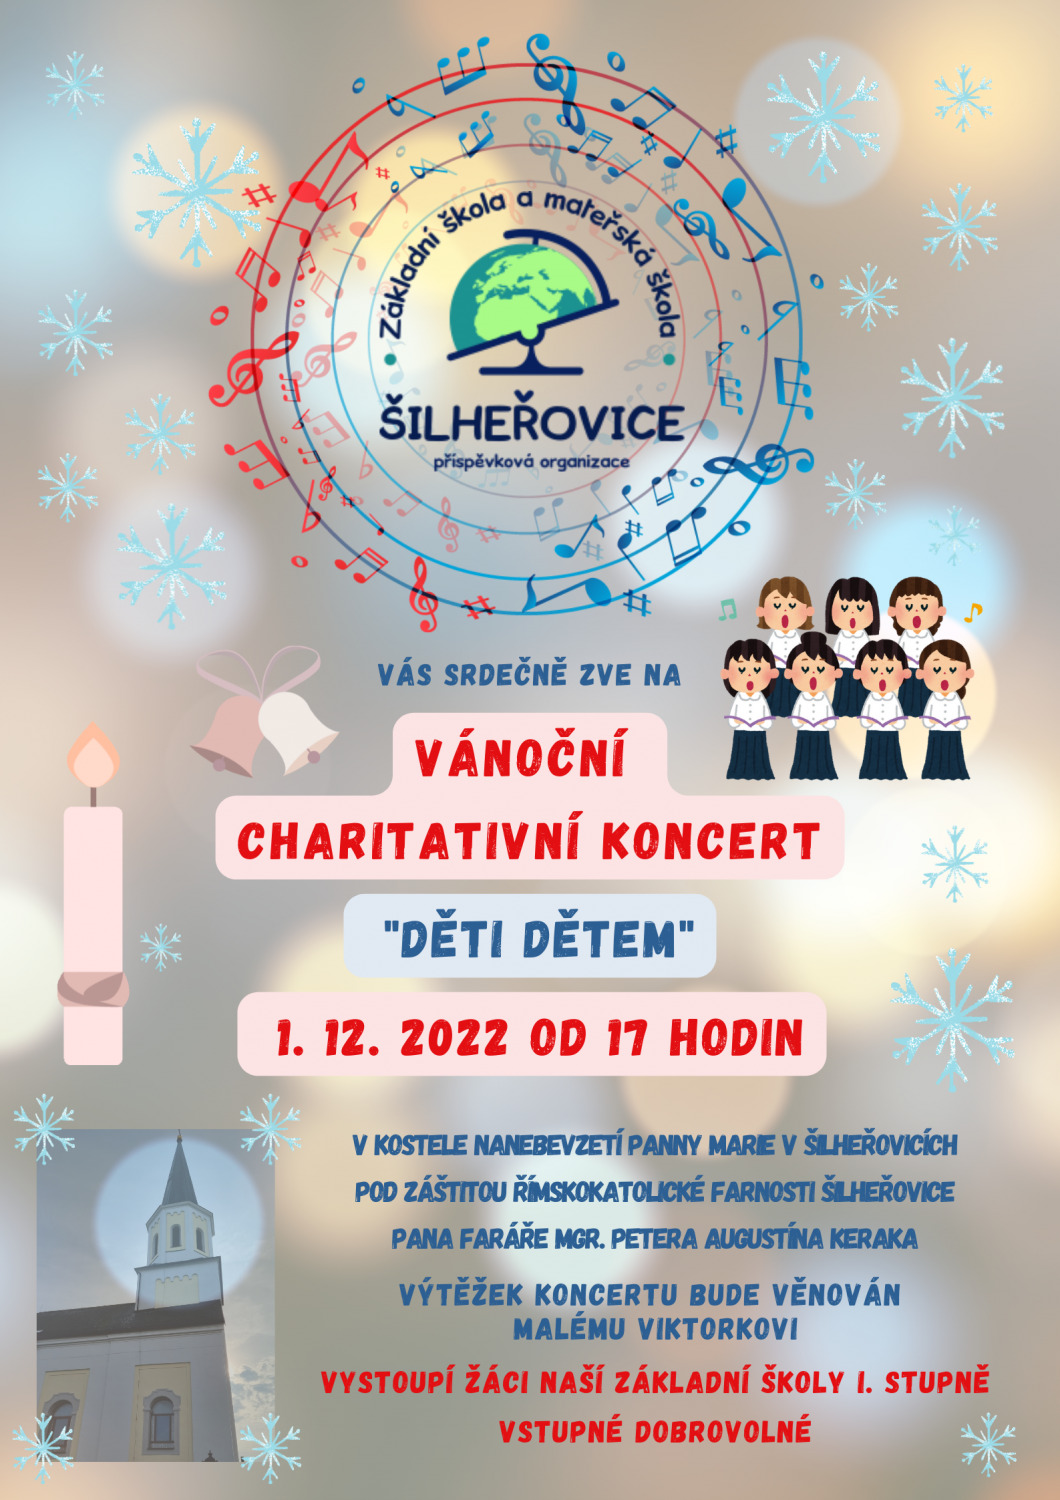 Vánoční charitativní koncert "Děti dětem" 